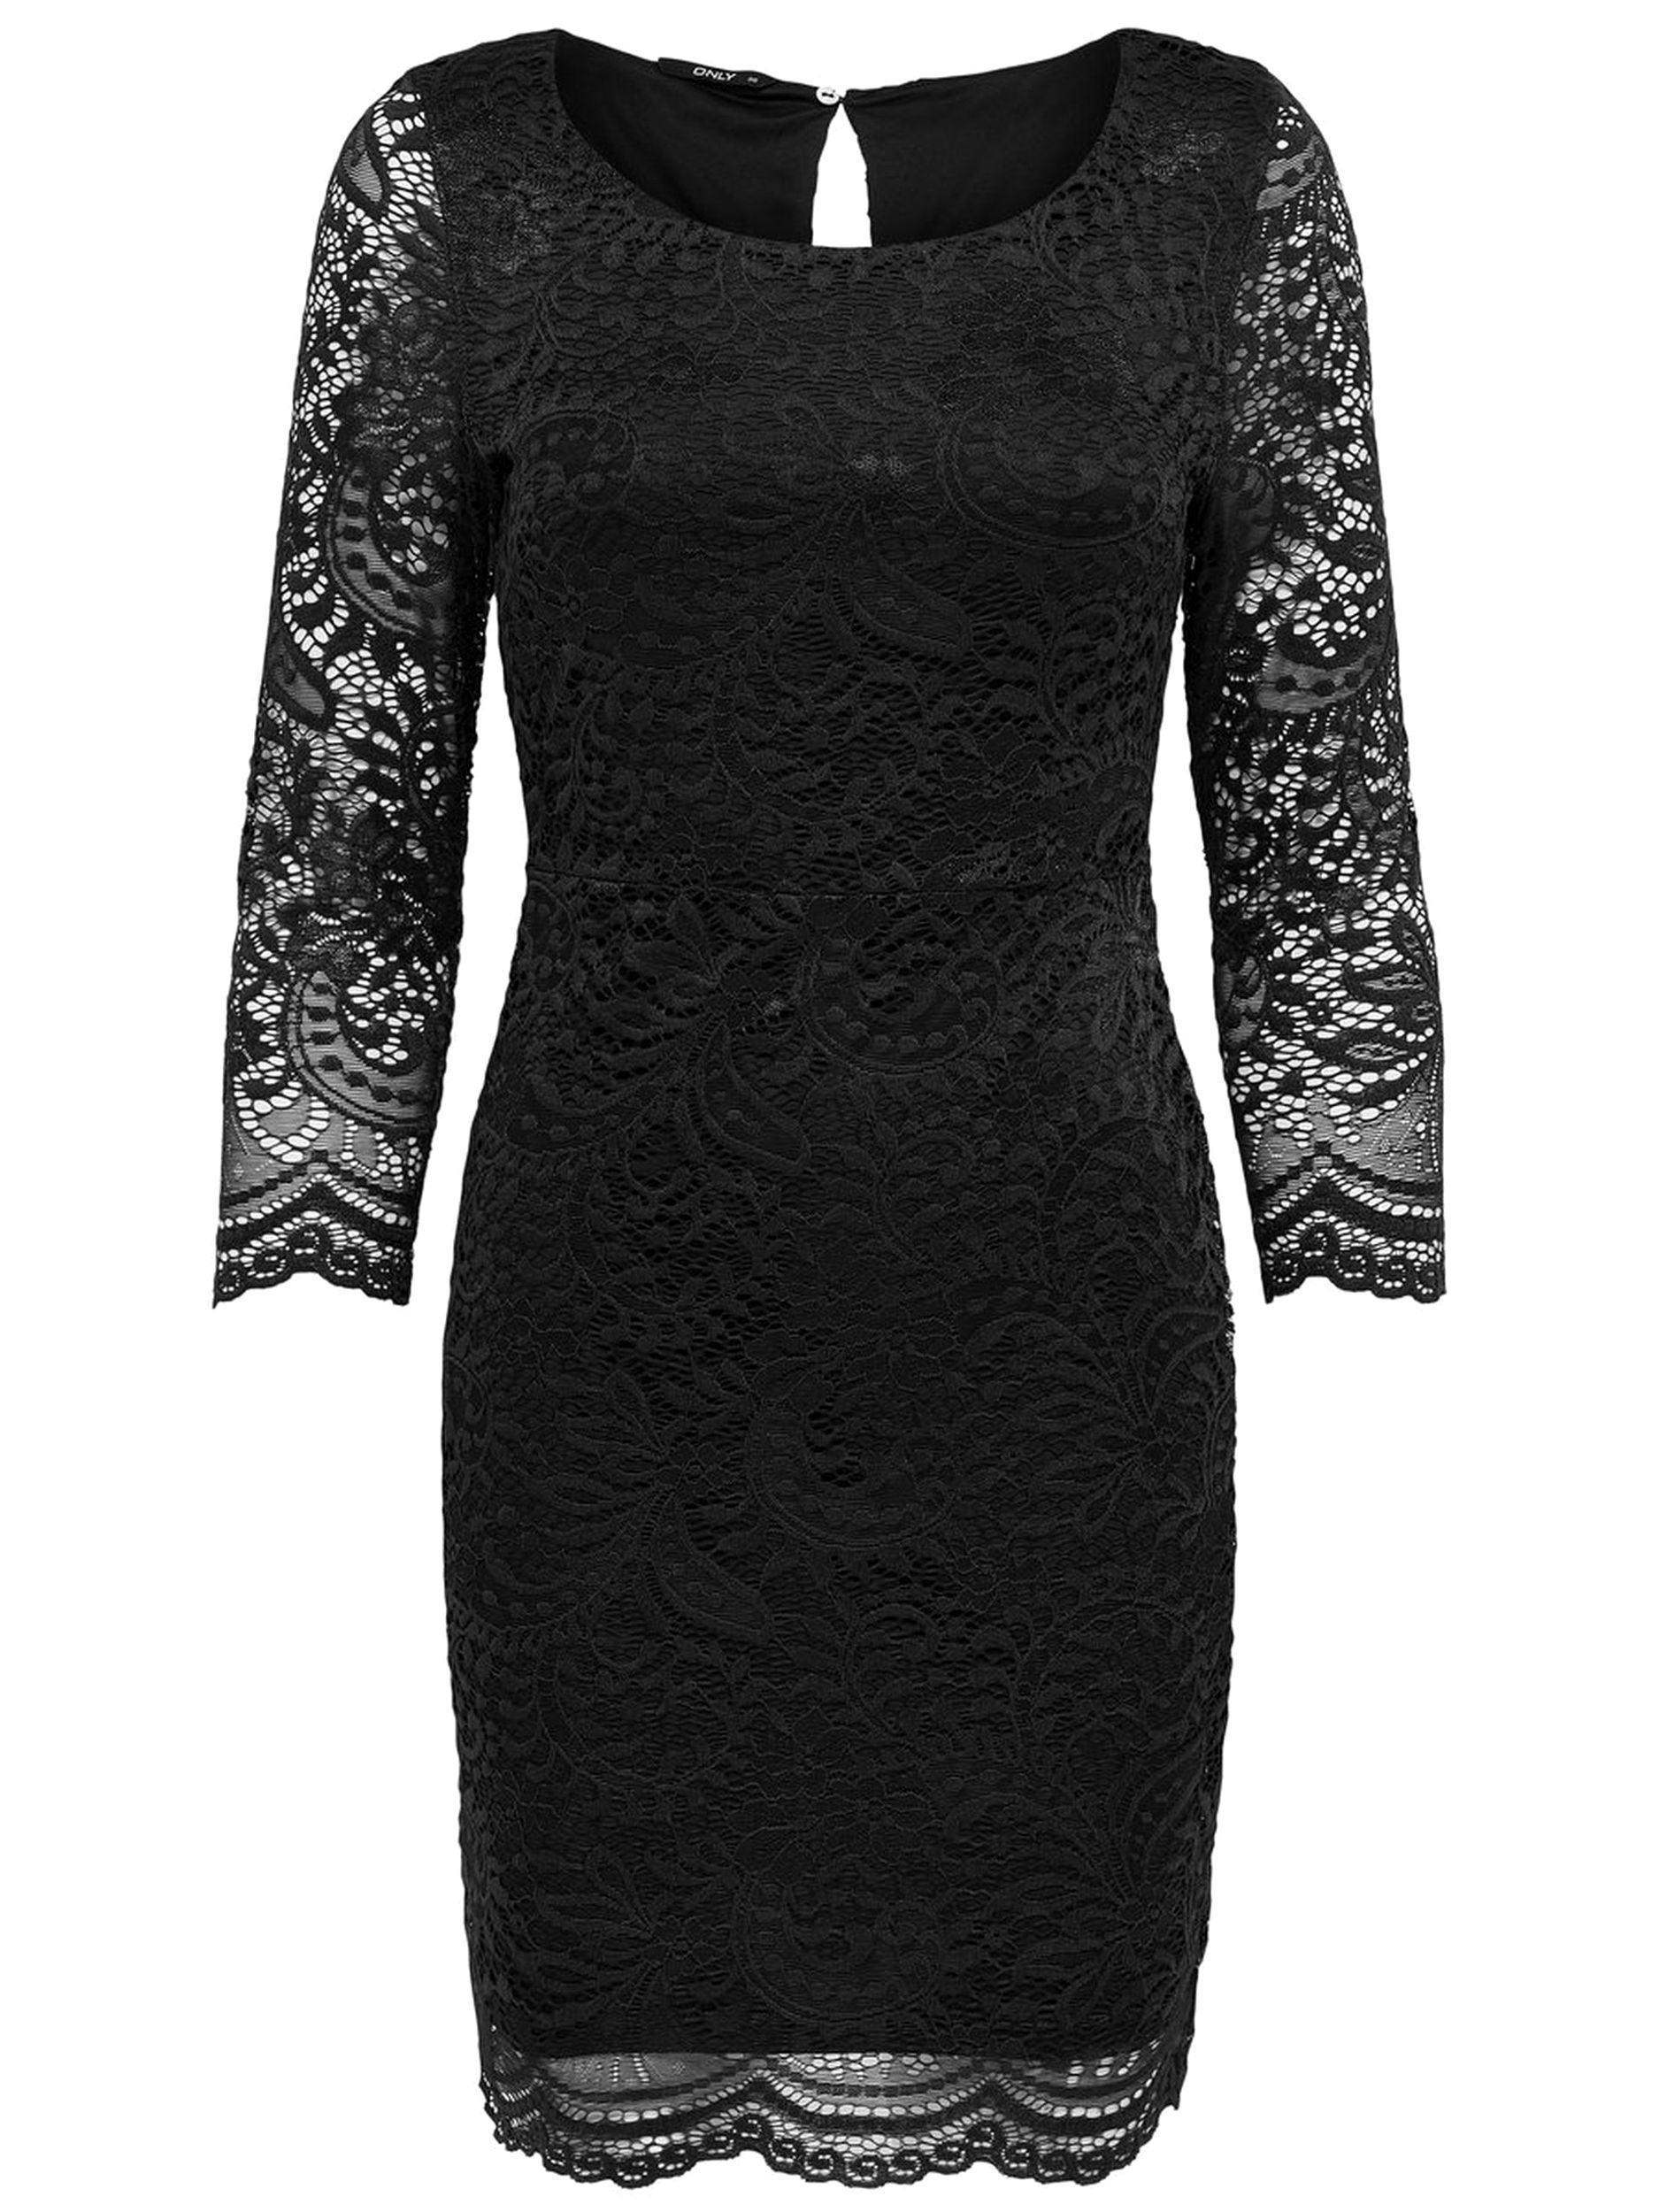 Einfach Kleid Schwarz Spitze Spezialgebiet20 Luxurius Kleid Schwarz Spitze Stylish